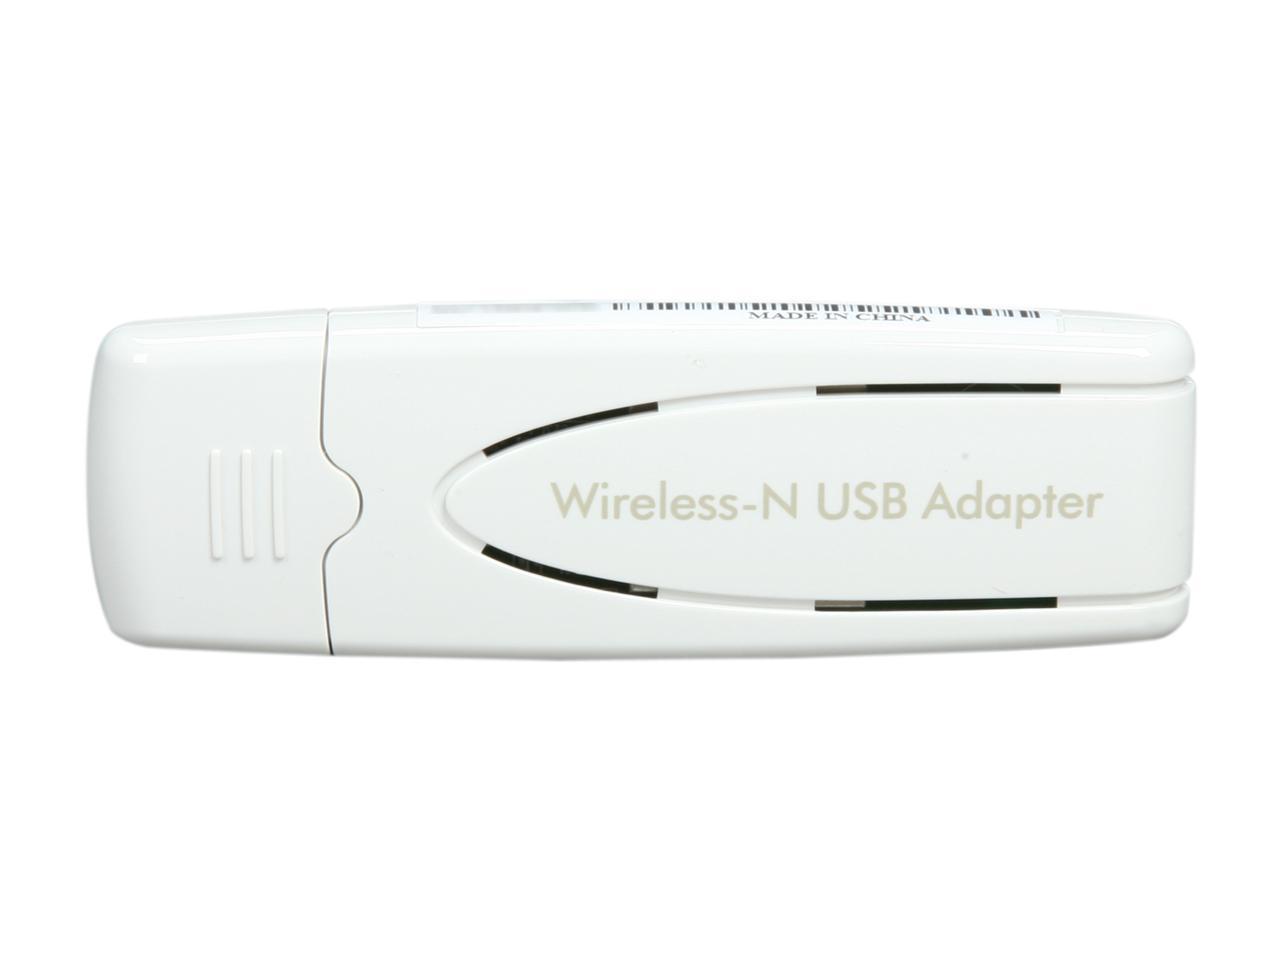 NETGEAR N300 Model WN111 USB Wireless Adapter 